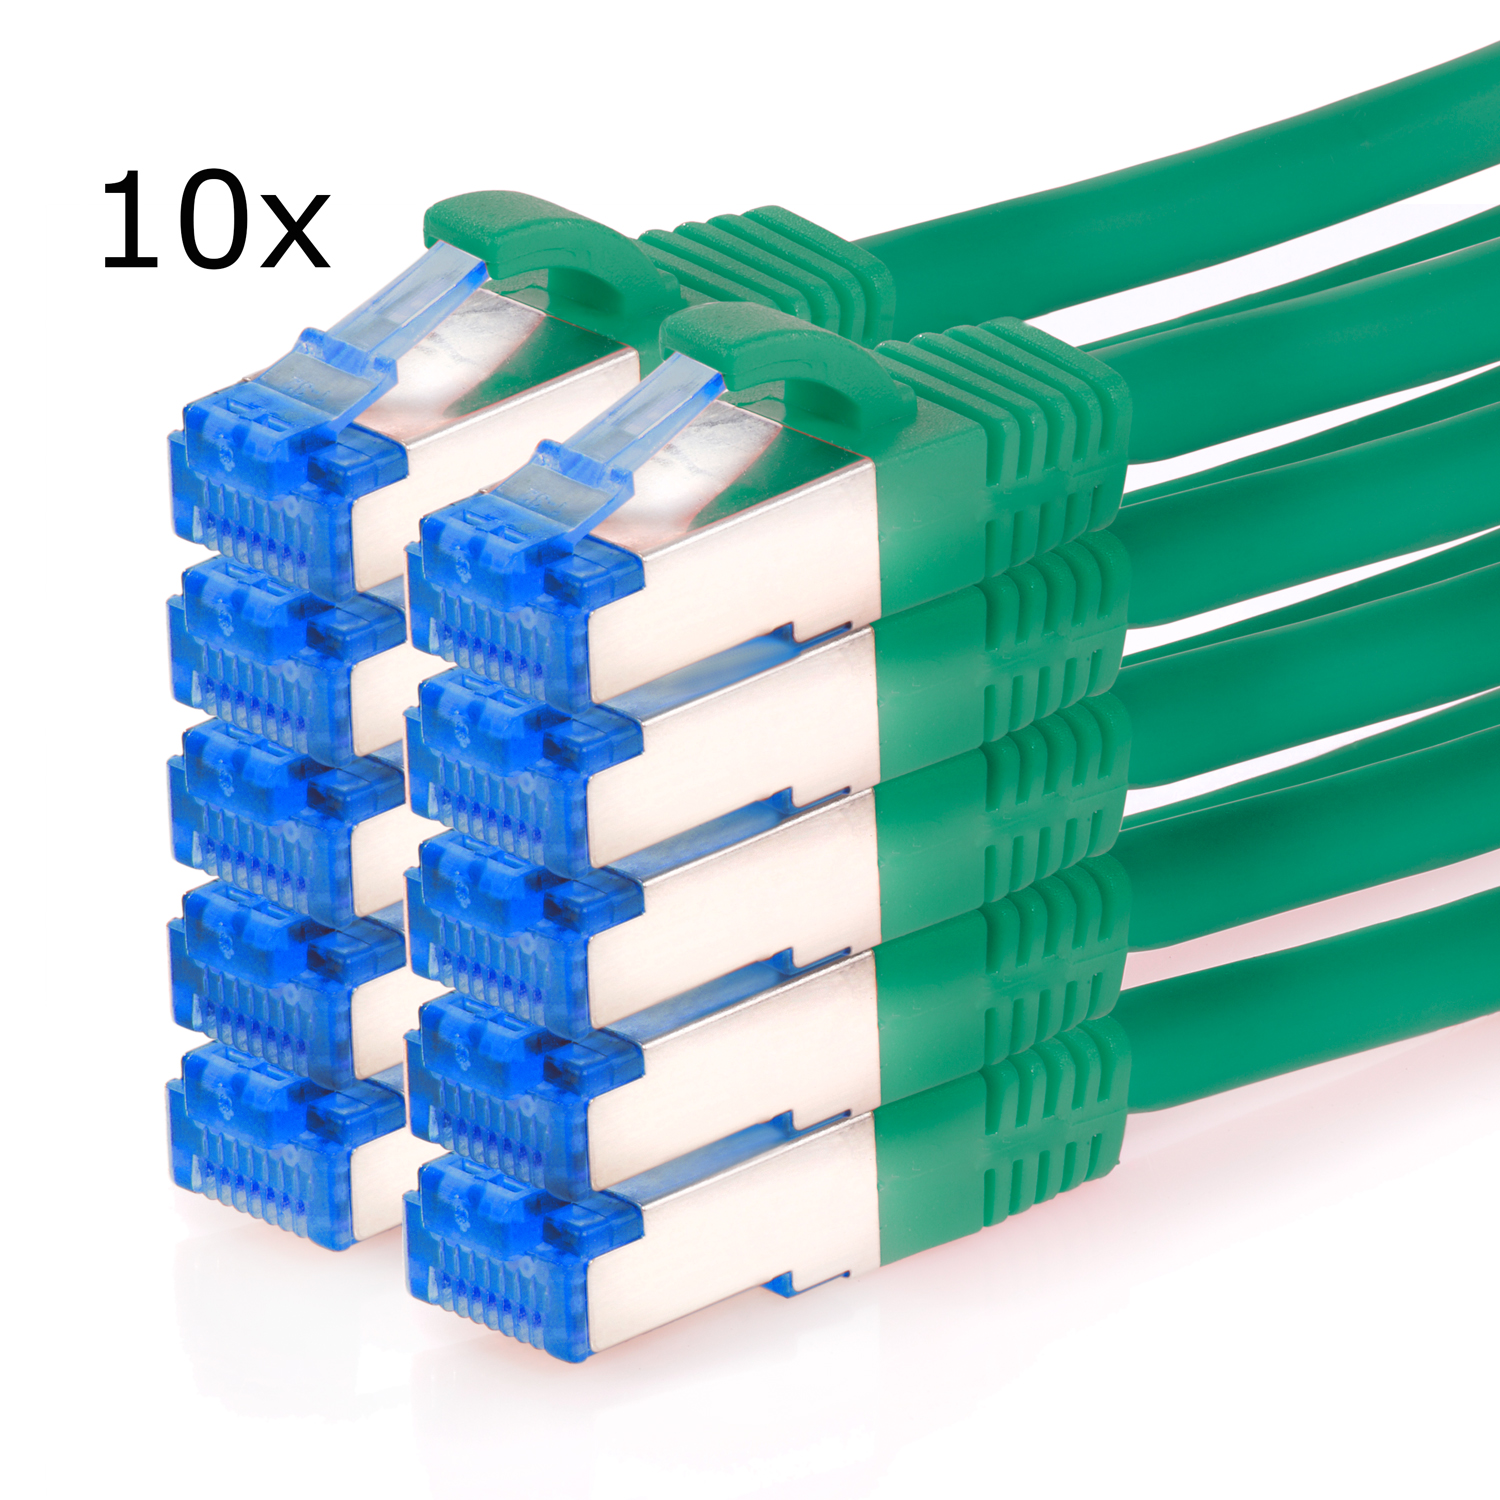 m 3m grün, Patchkabel 3 10GBit, Netzwerkkabel, Pack Netzwerkkabel 10er / S/FTP TPFNET